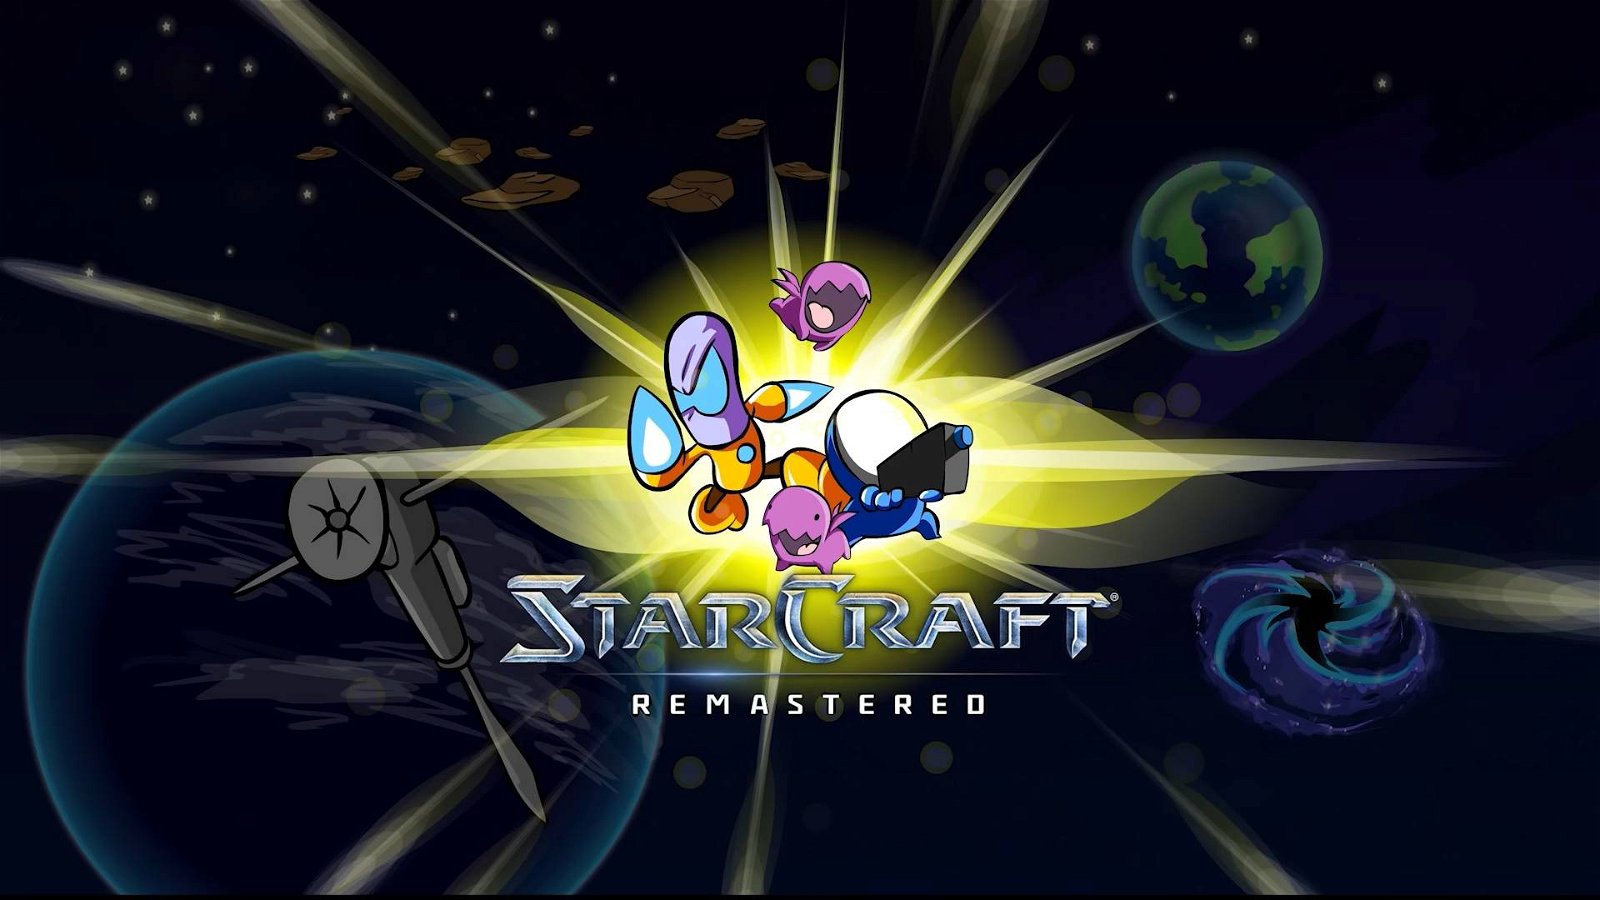 Immagine di Starcraft Remastered: un nuovo pacchetto grafico ufficiale trasforma la grafica in un cartoon